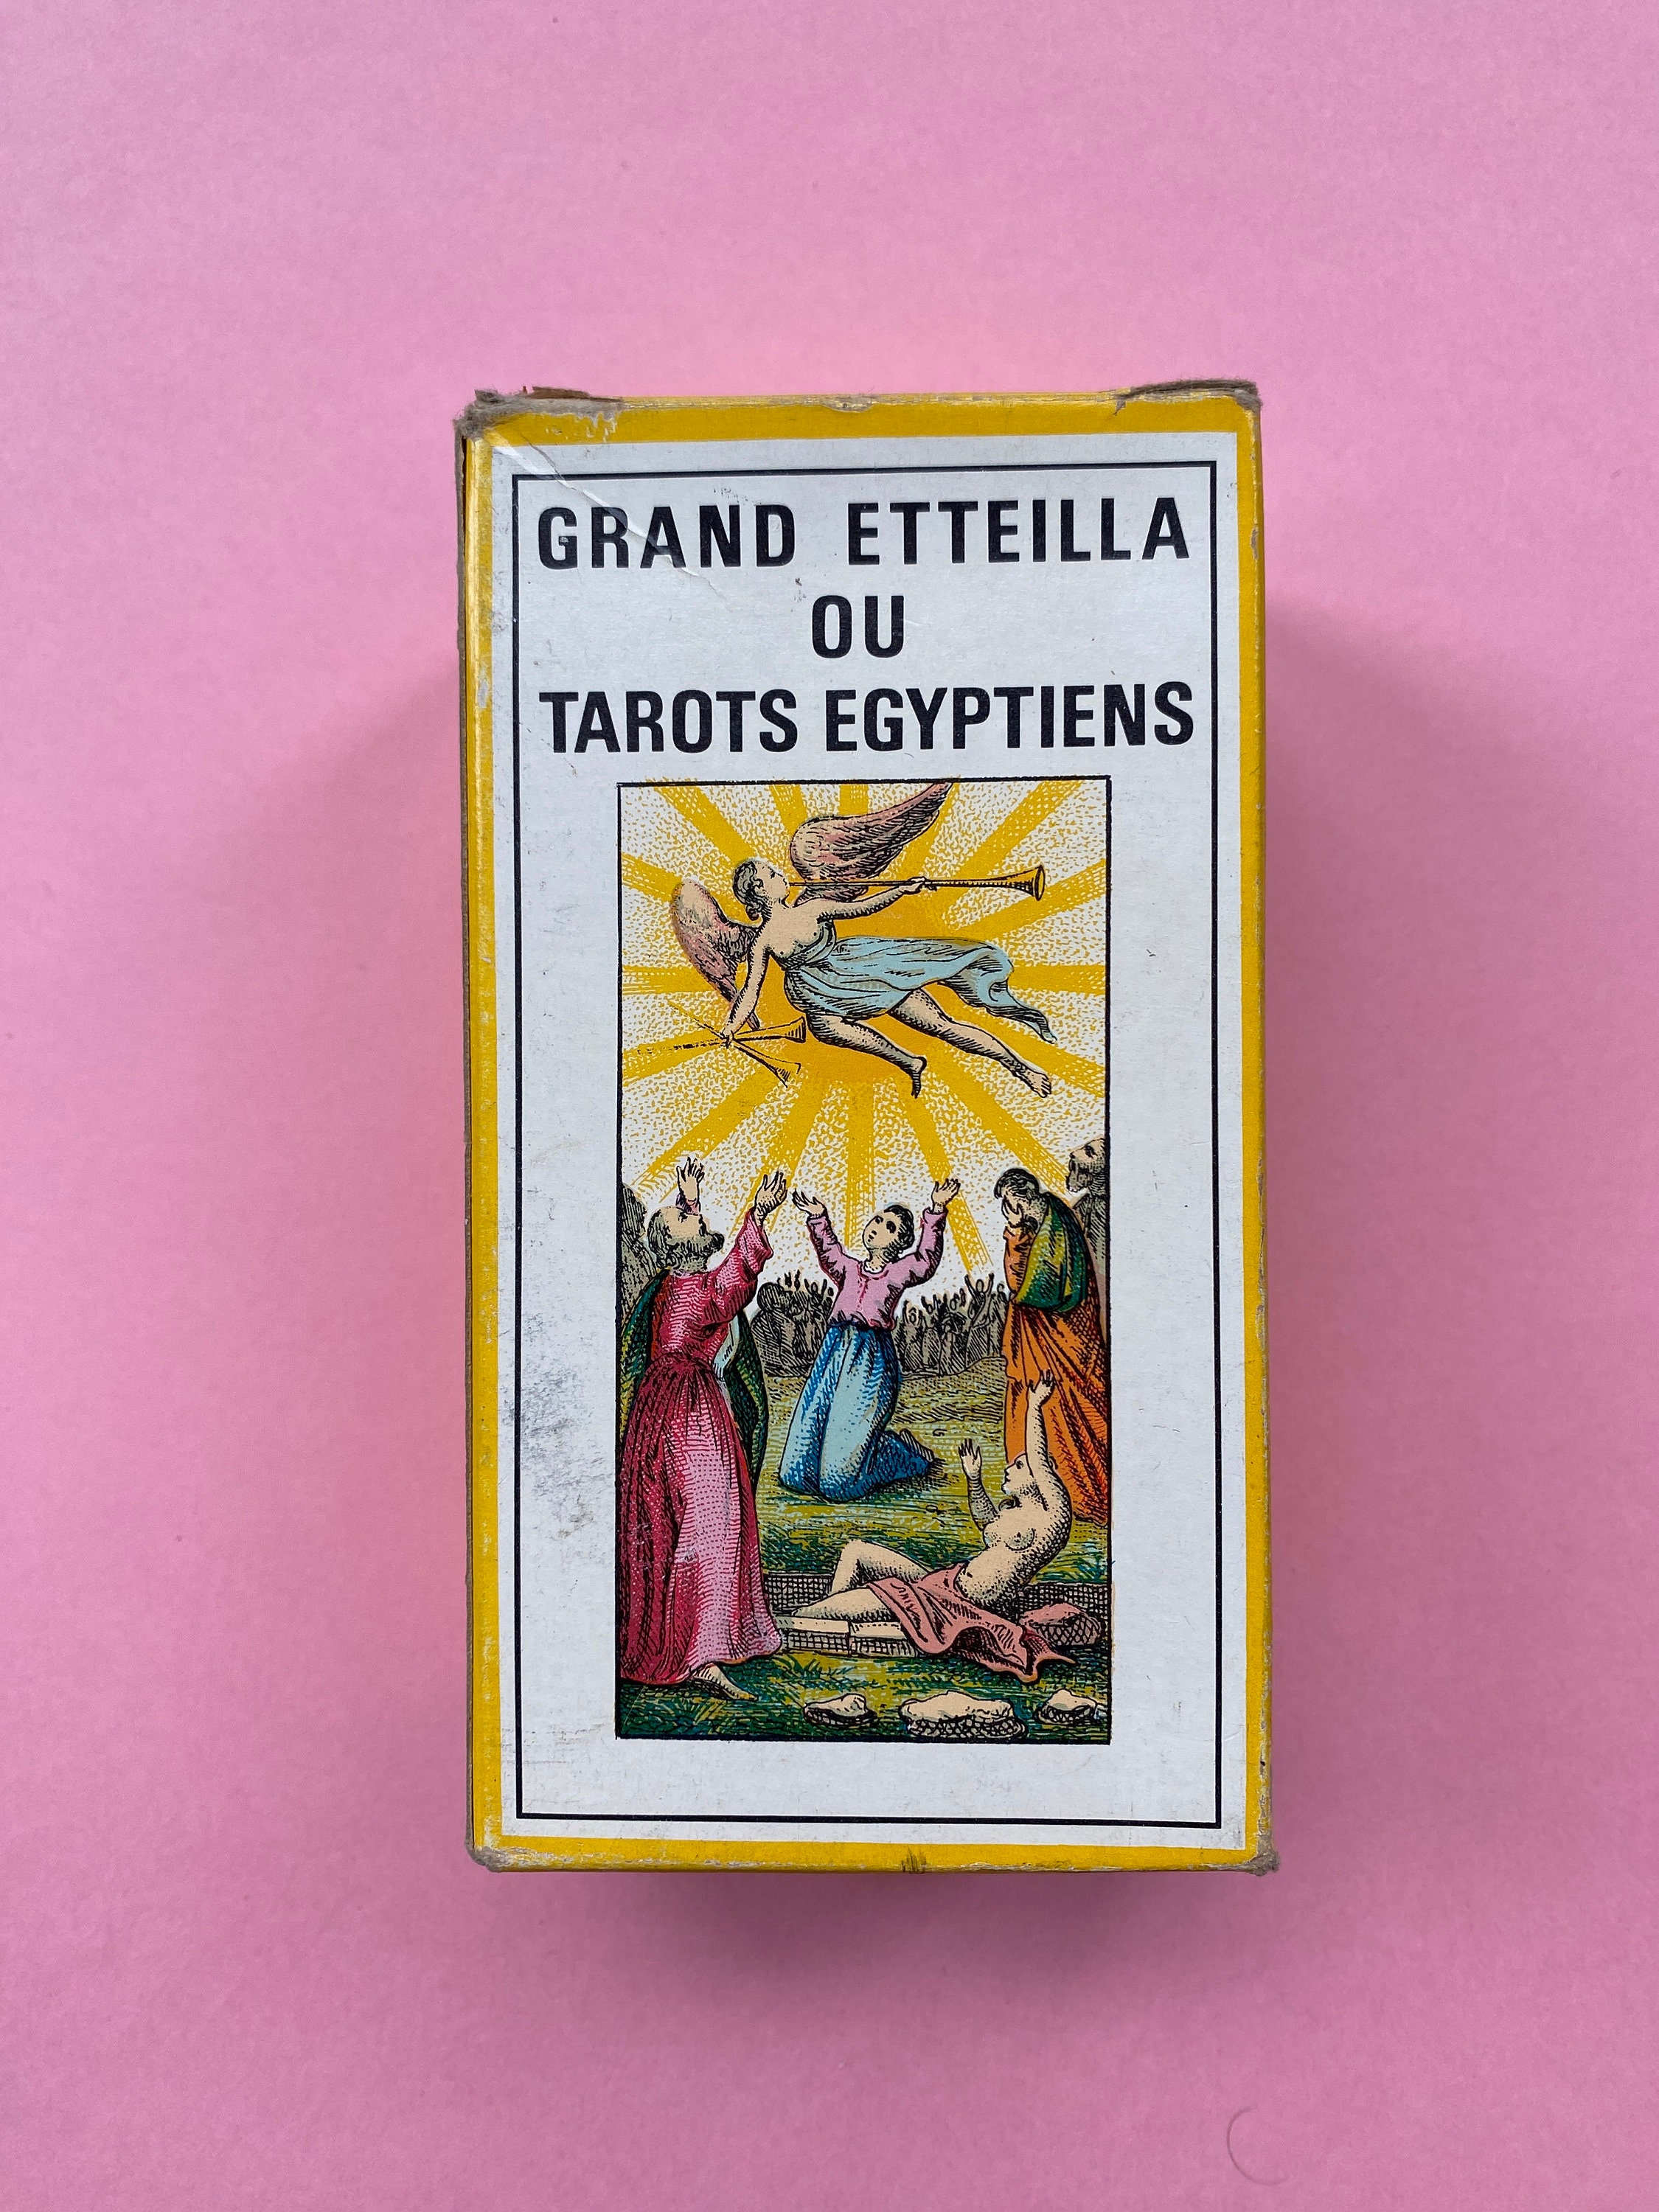 Oracle Gé - 1991 - Grimaud - Gérard Barbier - Complete + Box + Booklet